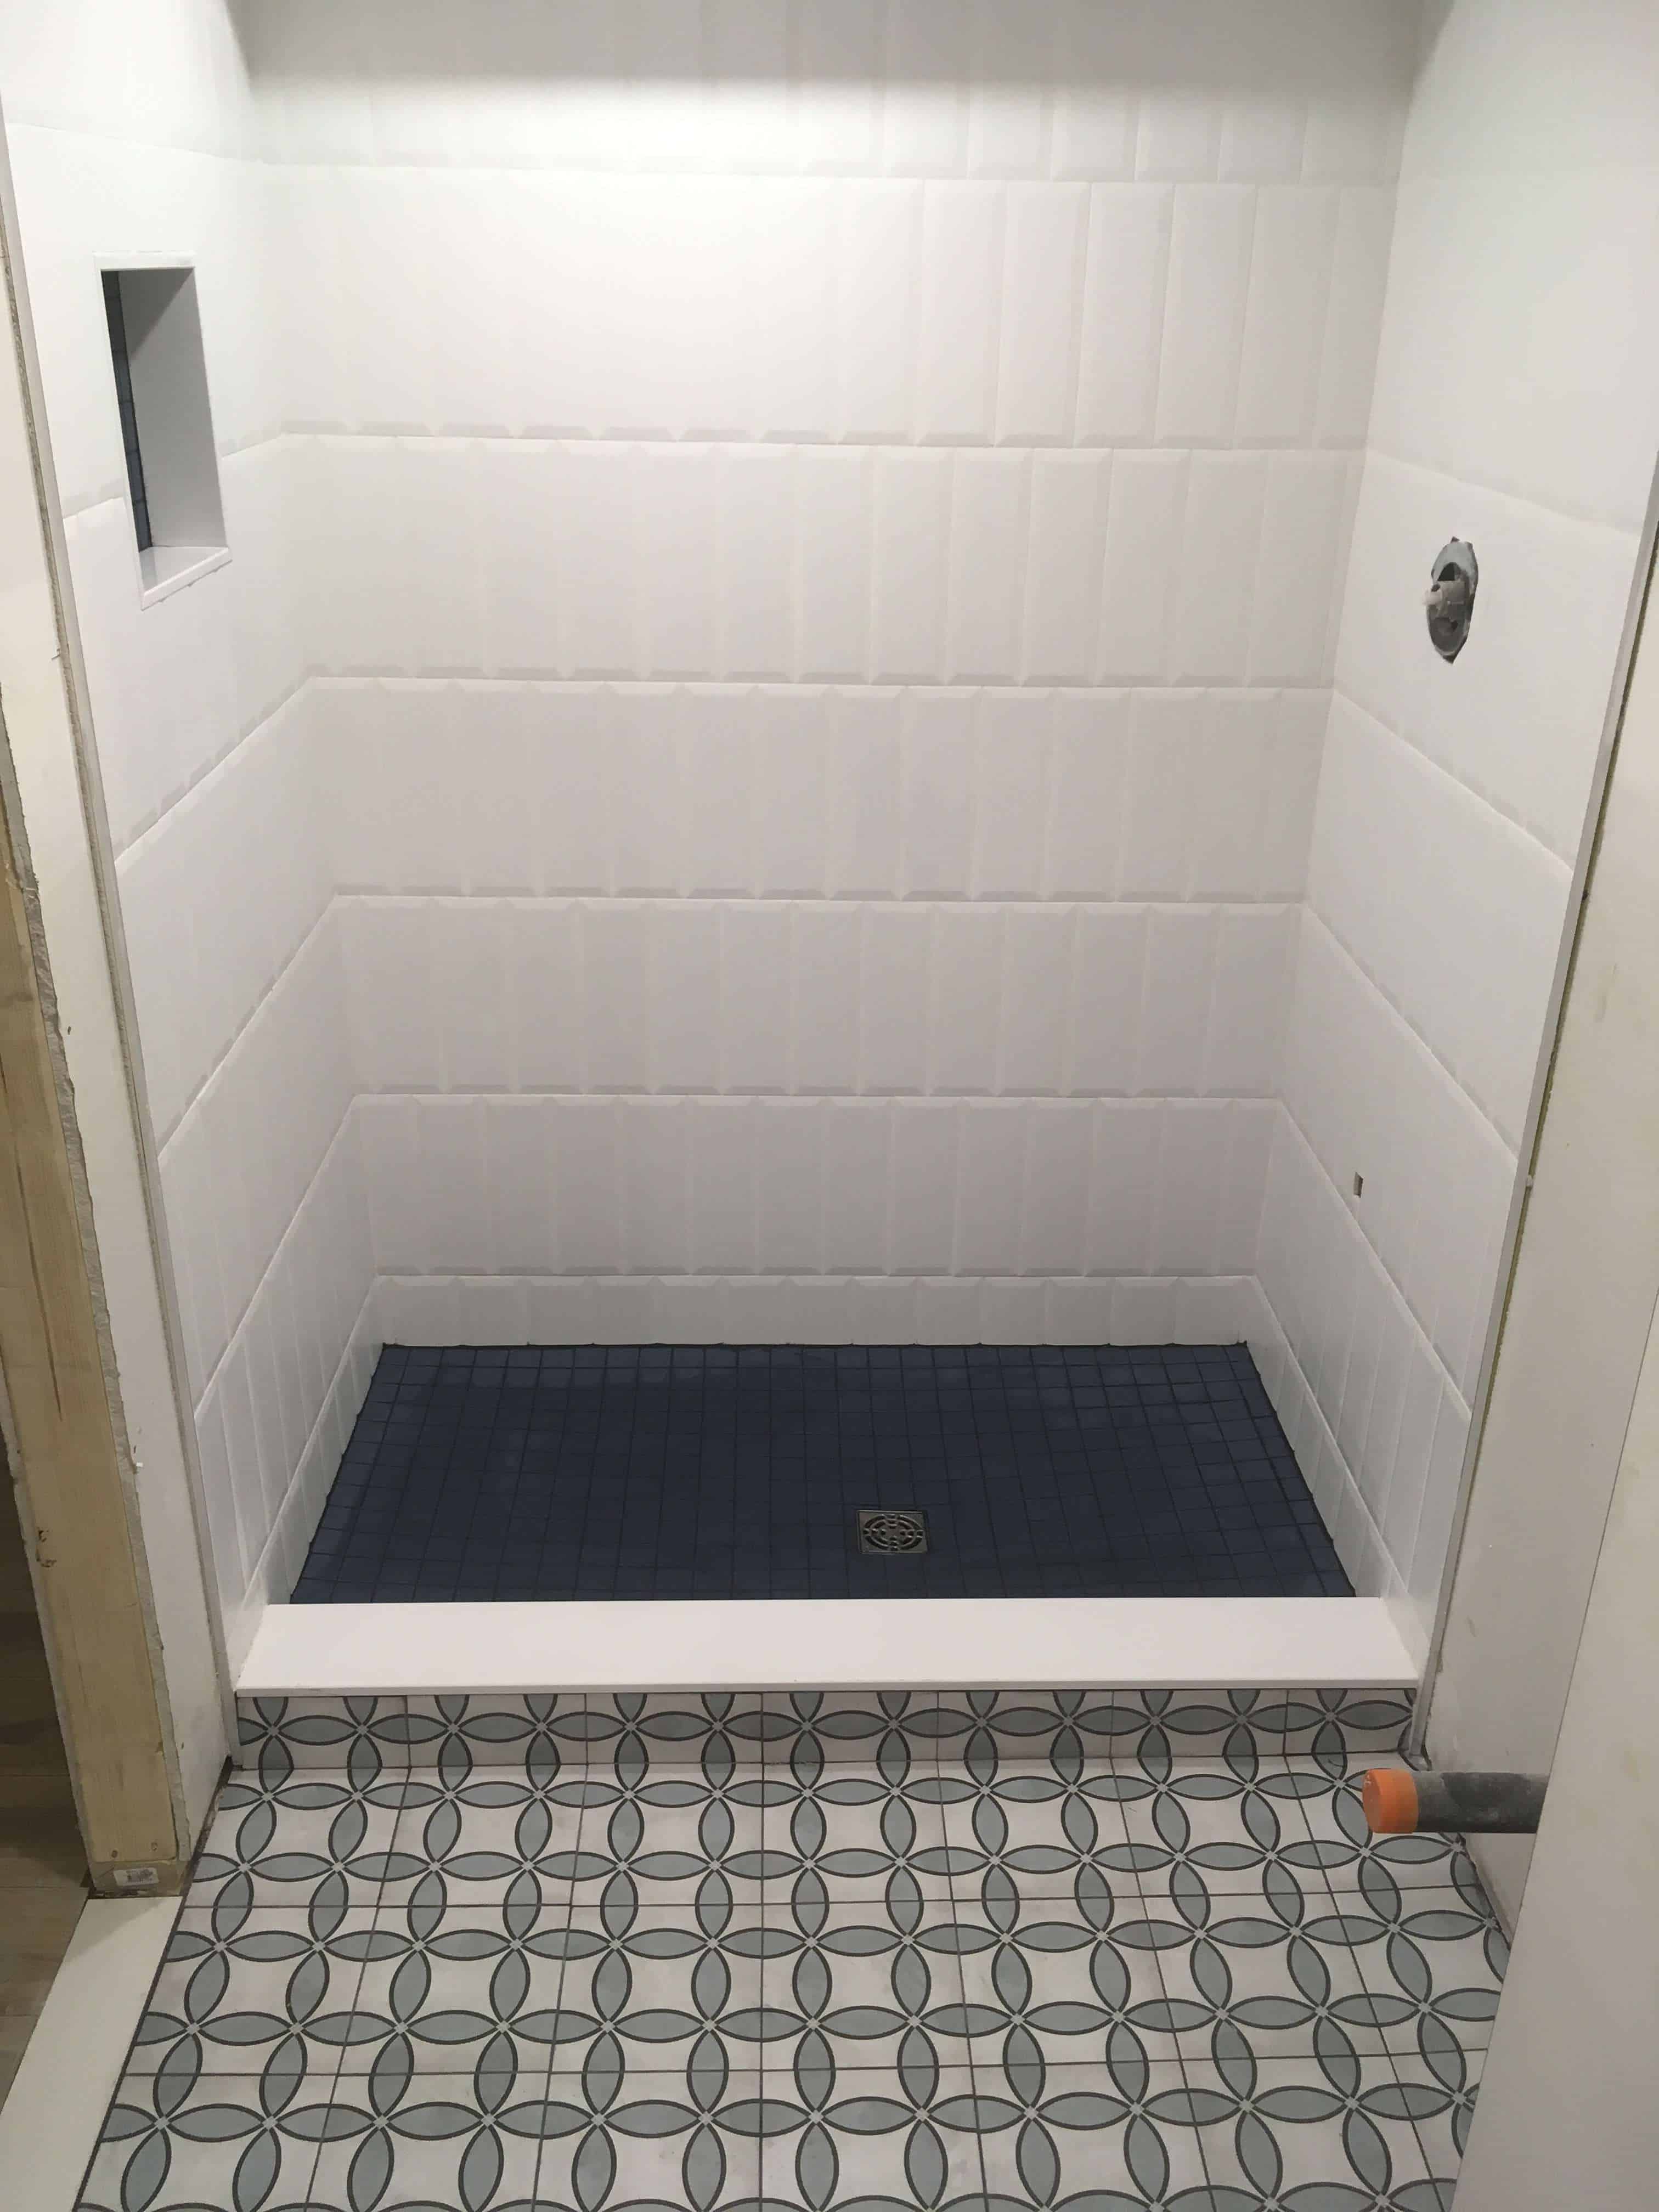 tiled bathroom floor